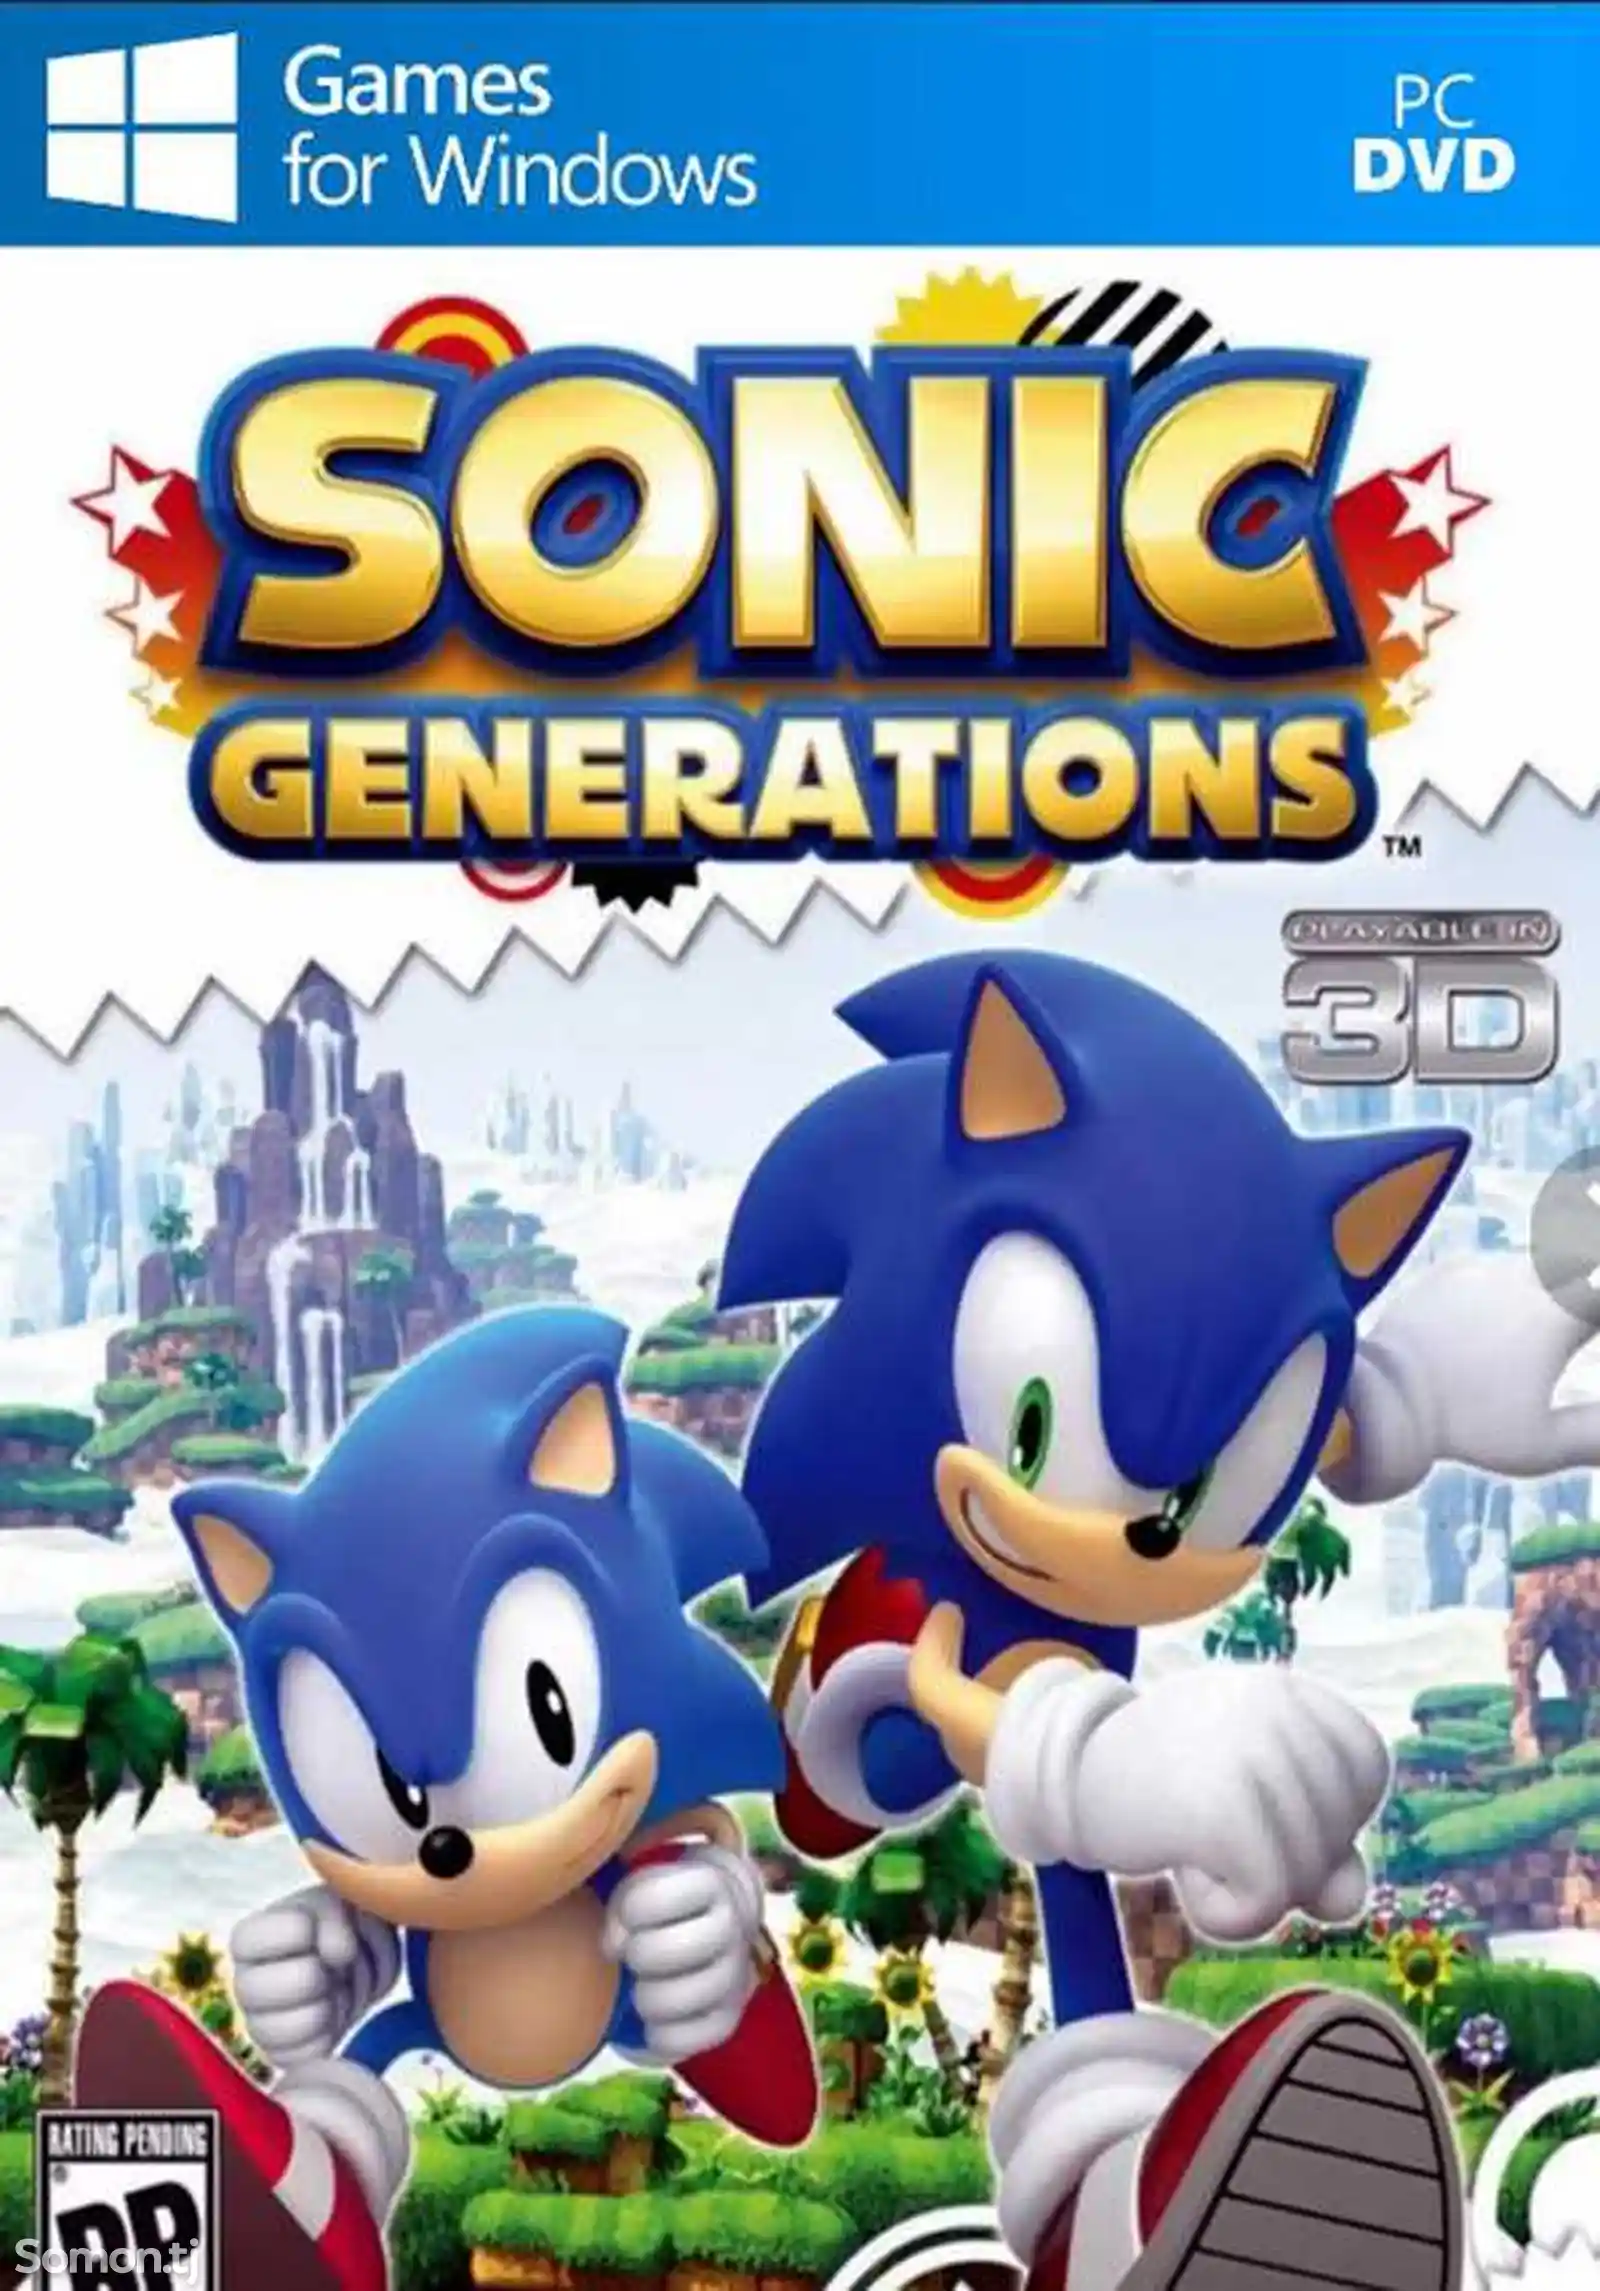 Игра Sonic generations для компьютера-пк-pc-1